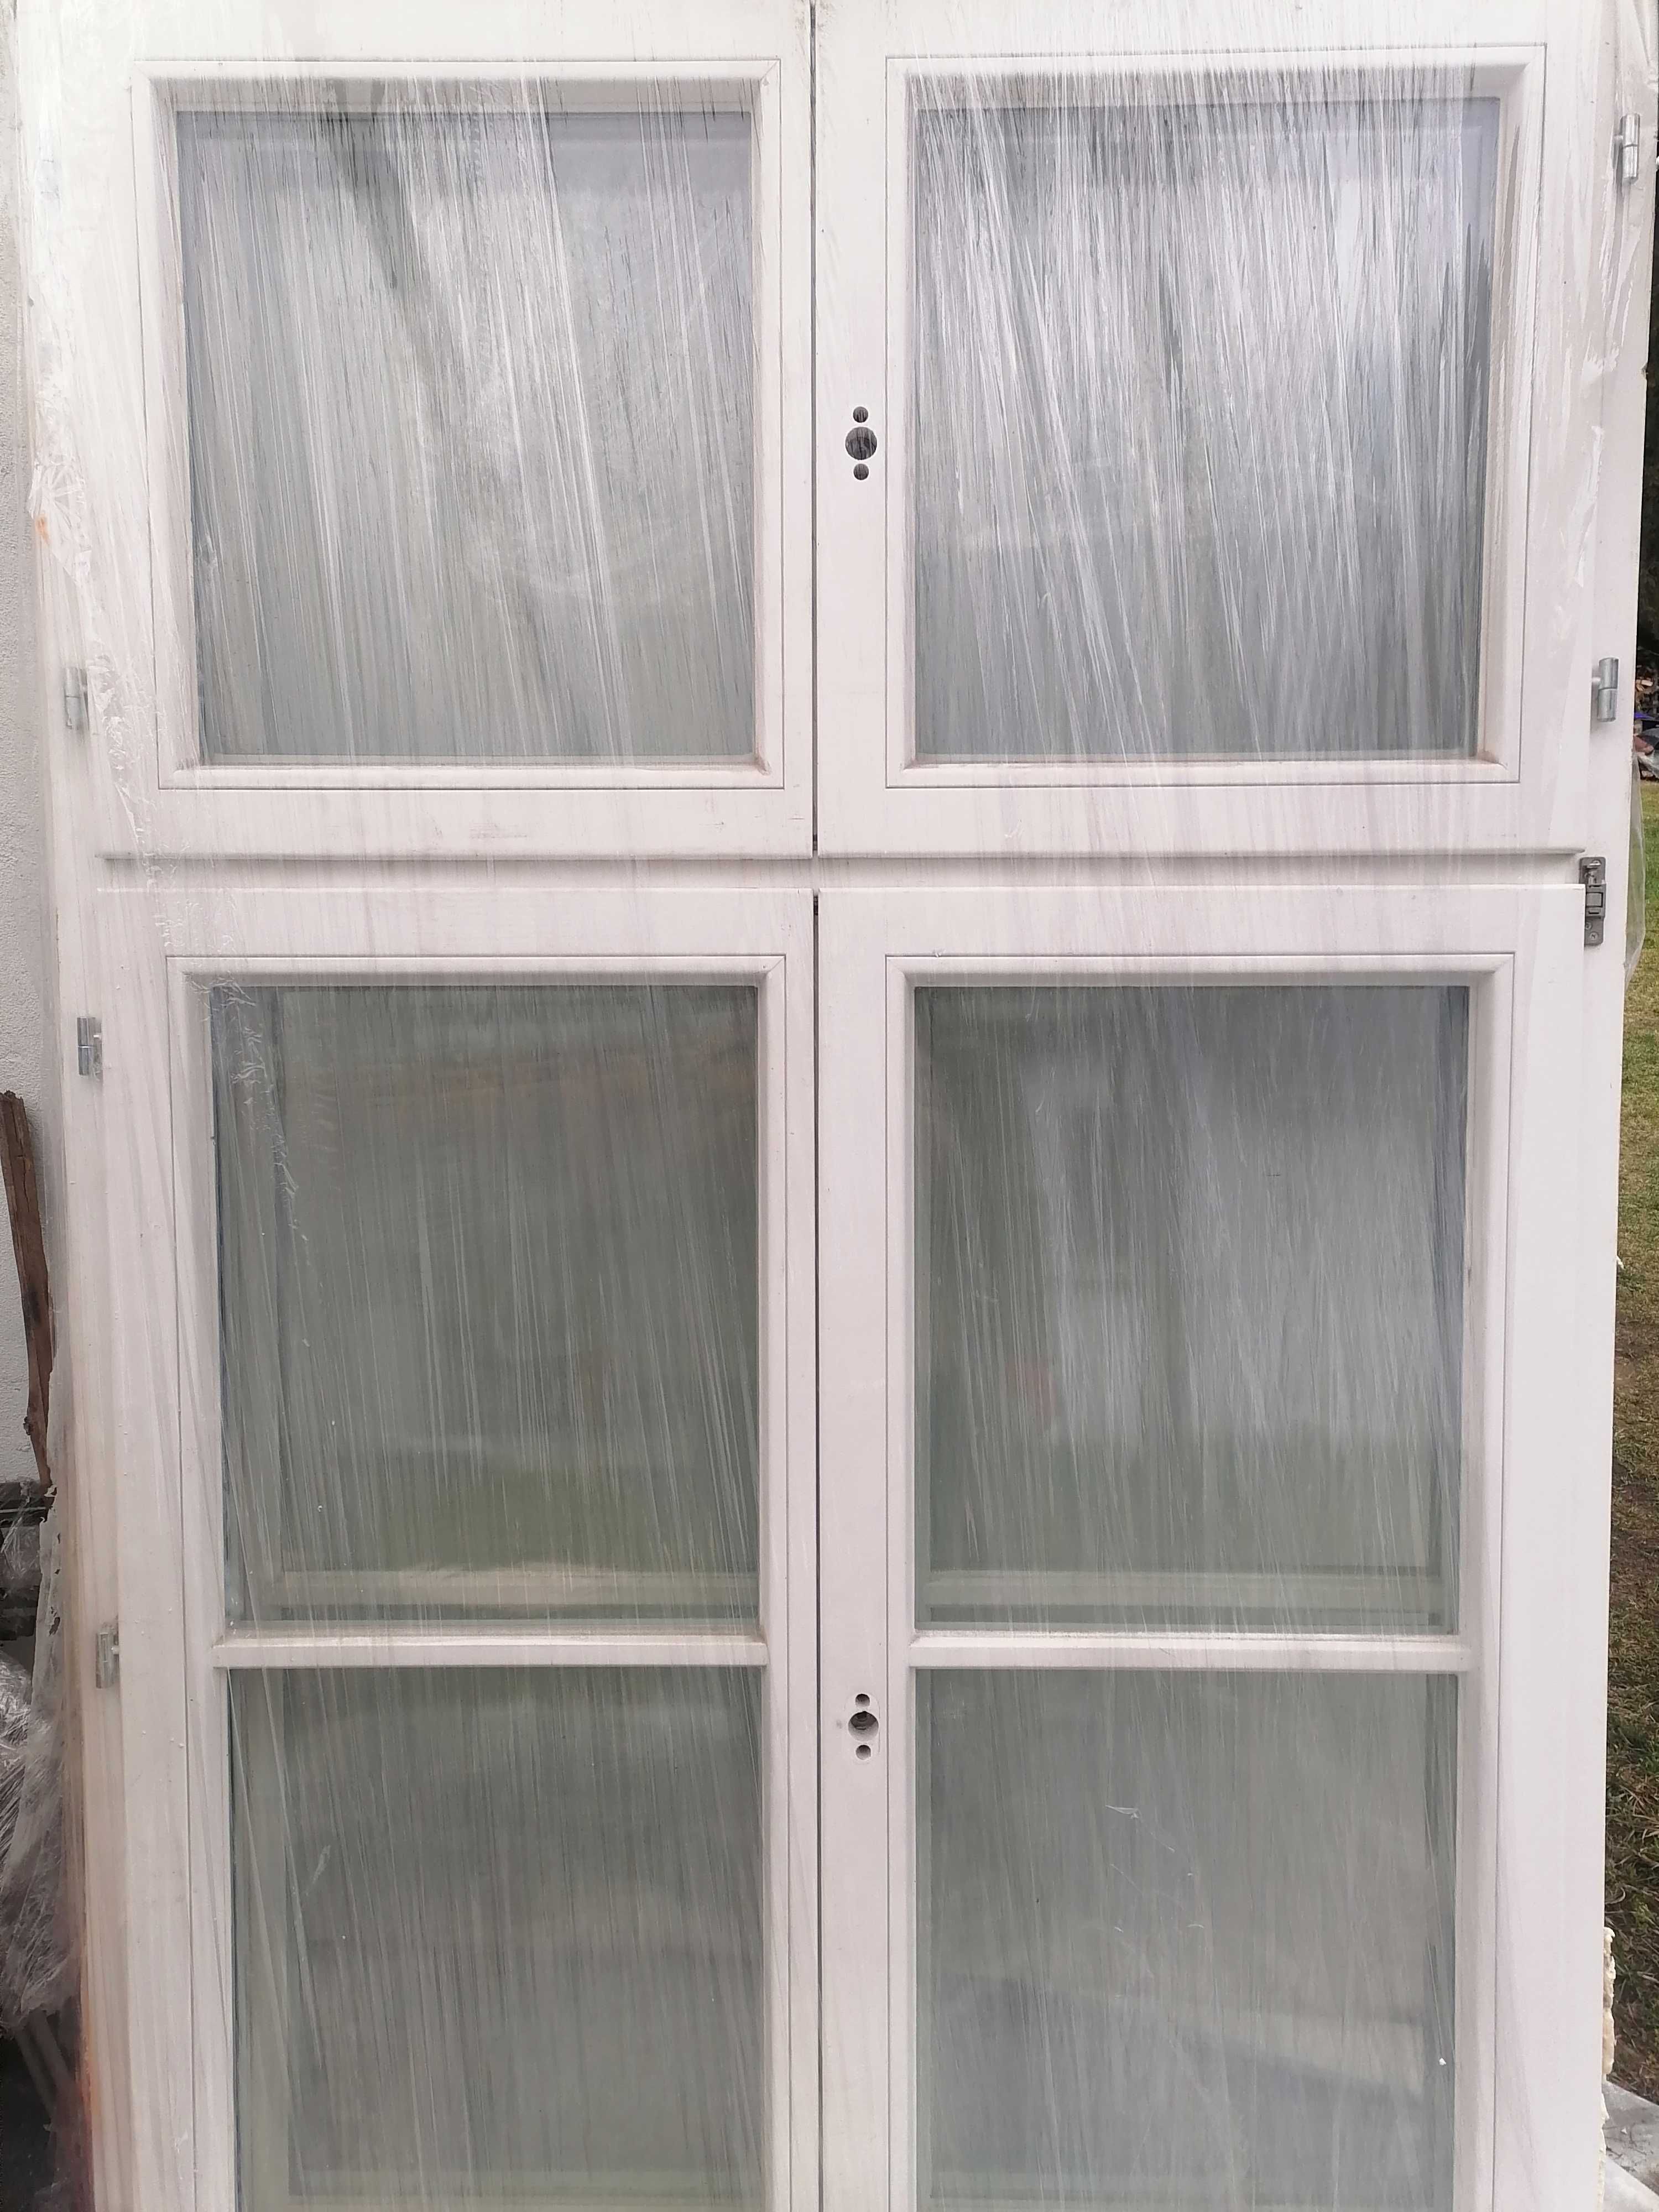 okna drewniane do kamienicy 205 x 127 cm, podwójna szyba zespolona